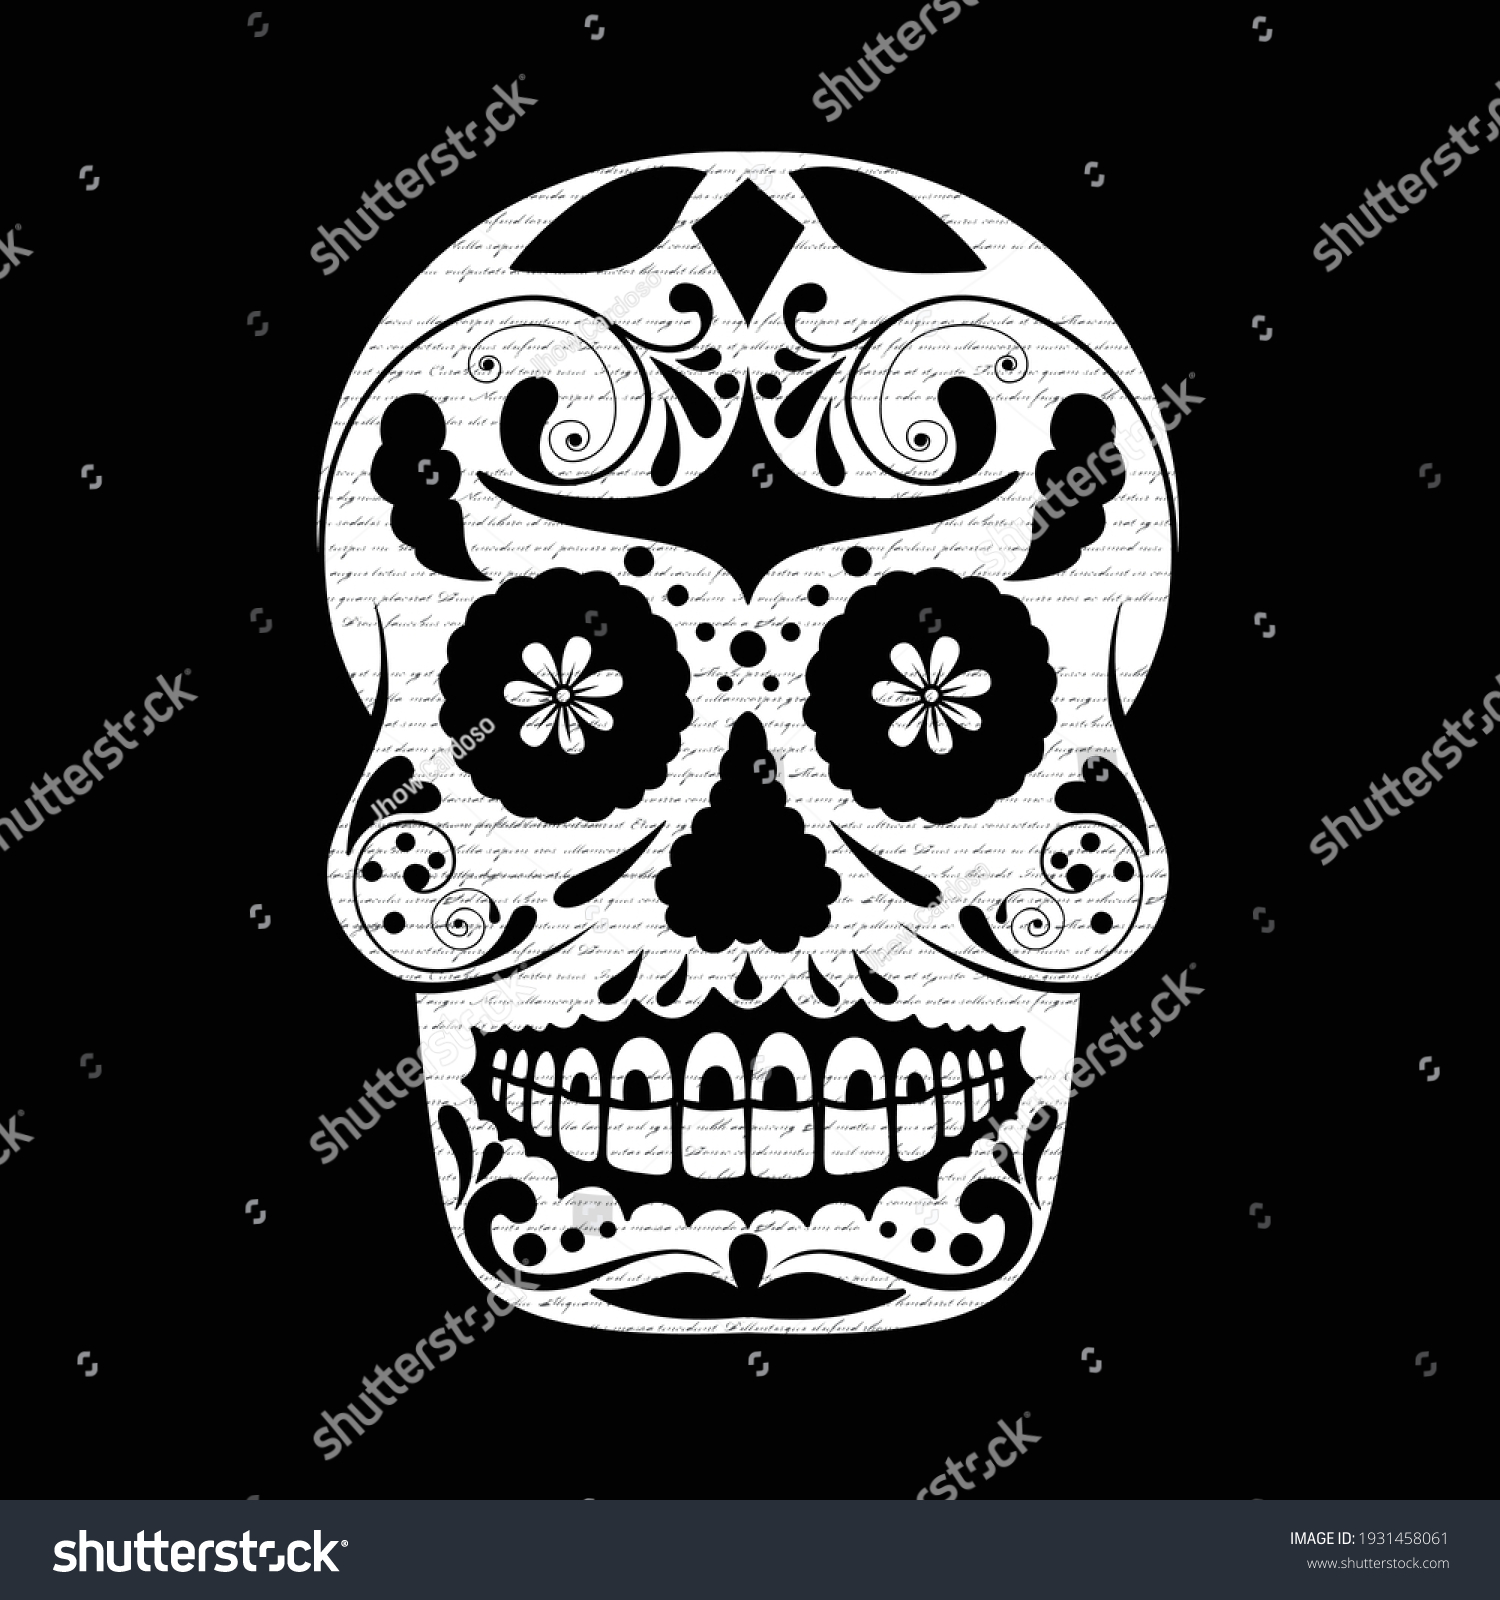 Black White Skull Letters Background Illustrator Stock Vector (Royalty ...